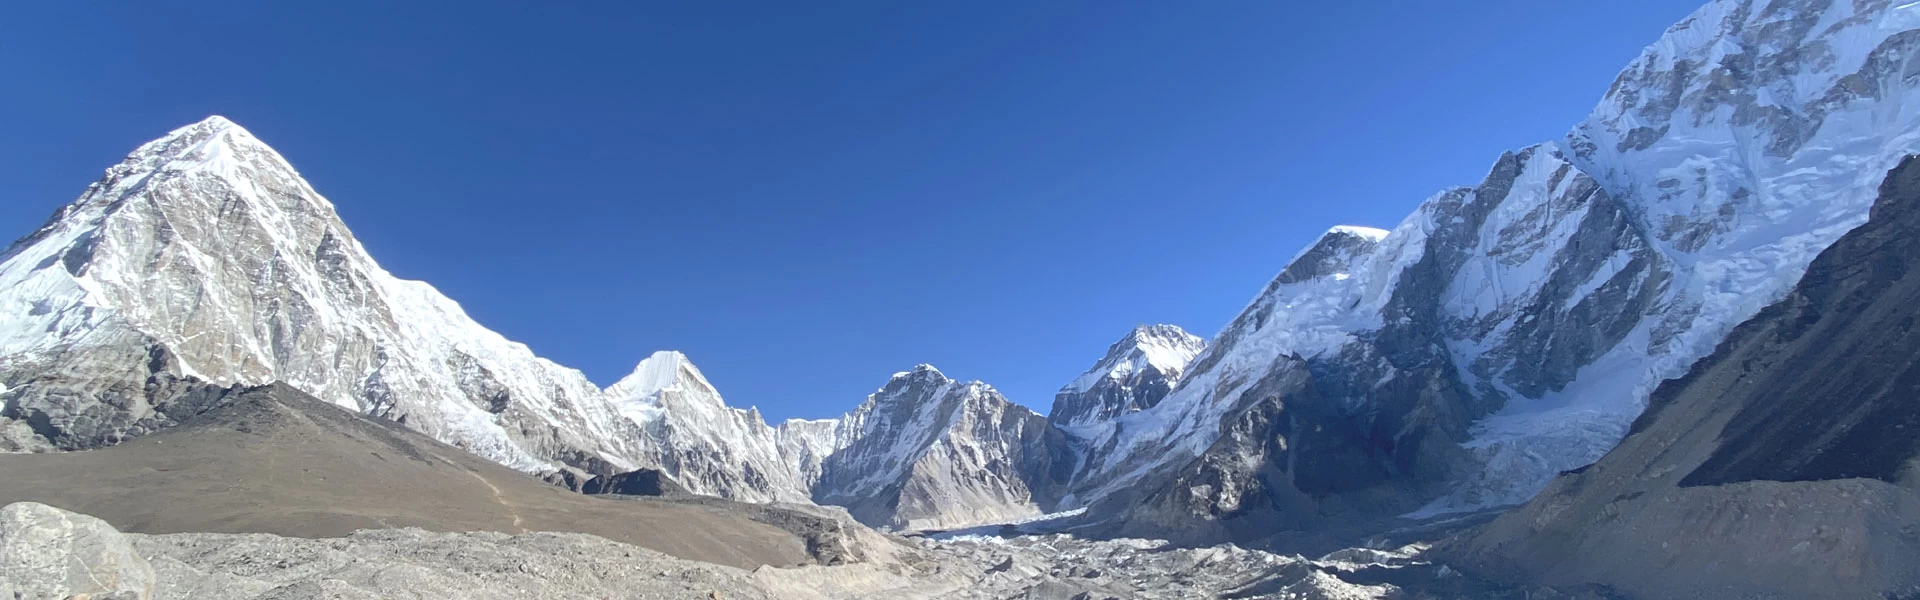 Best agency for Everest Base Camp Trek